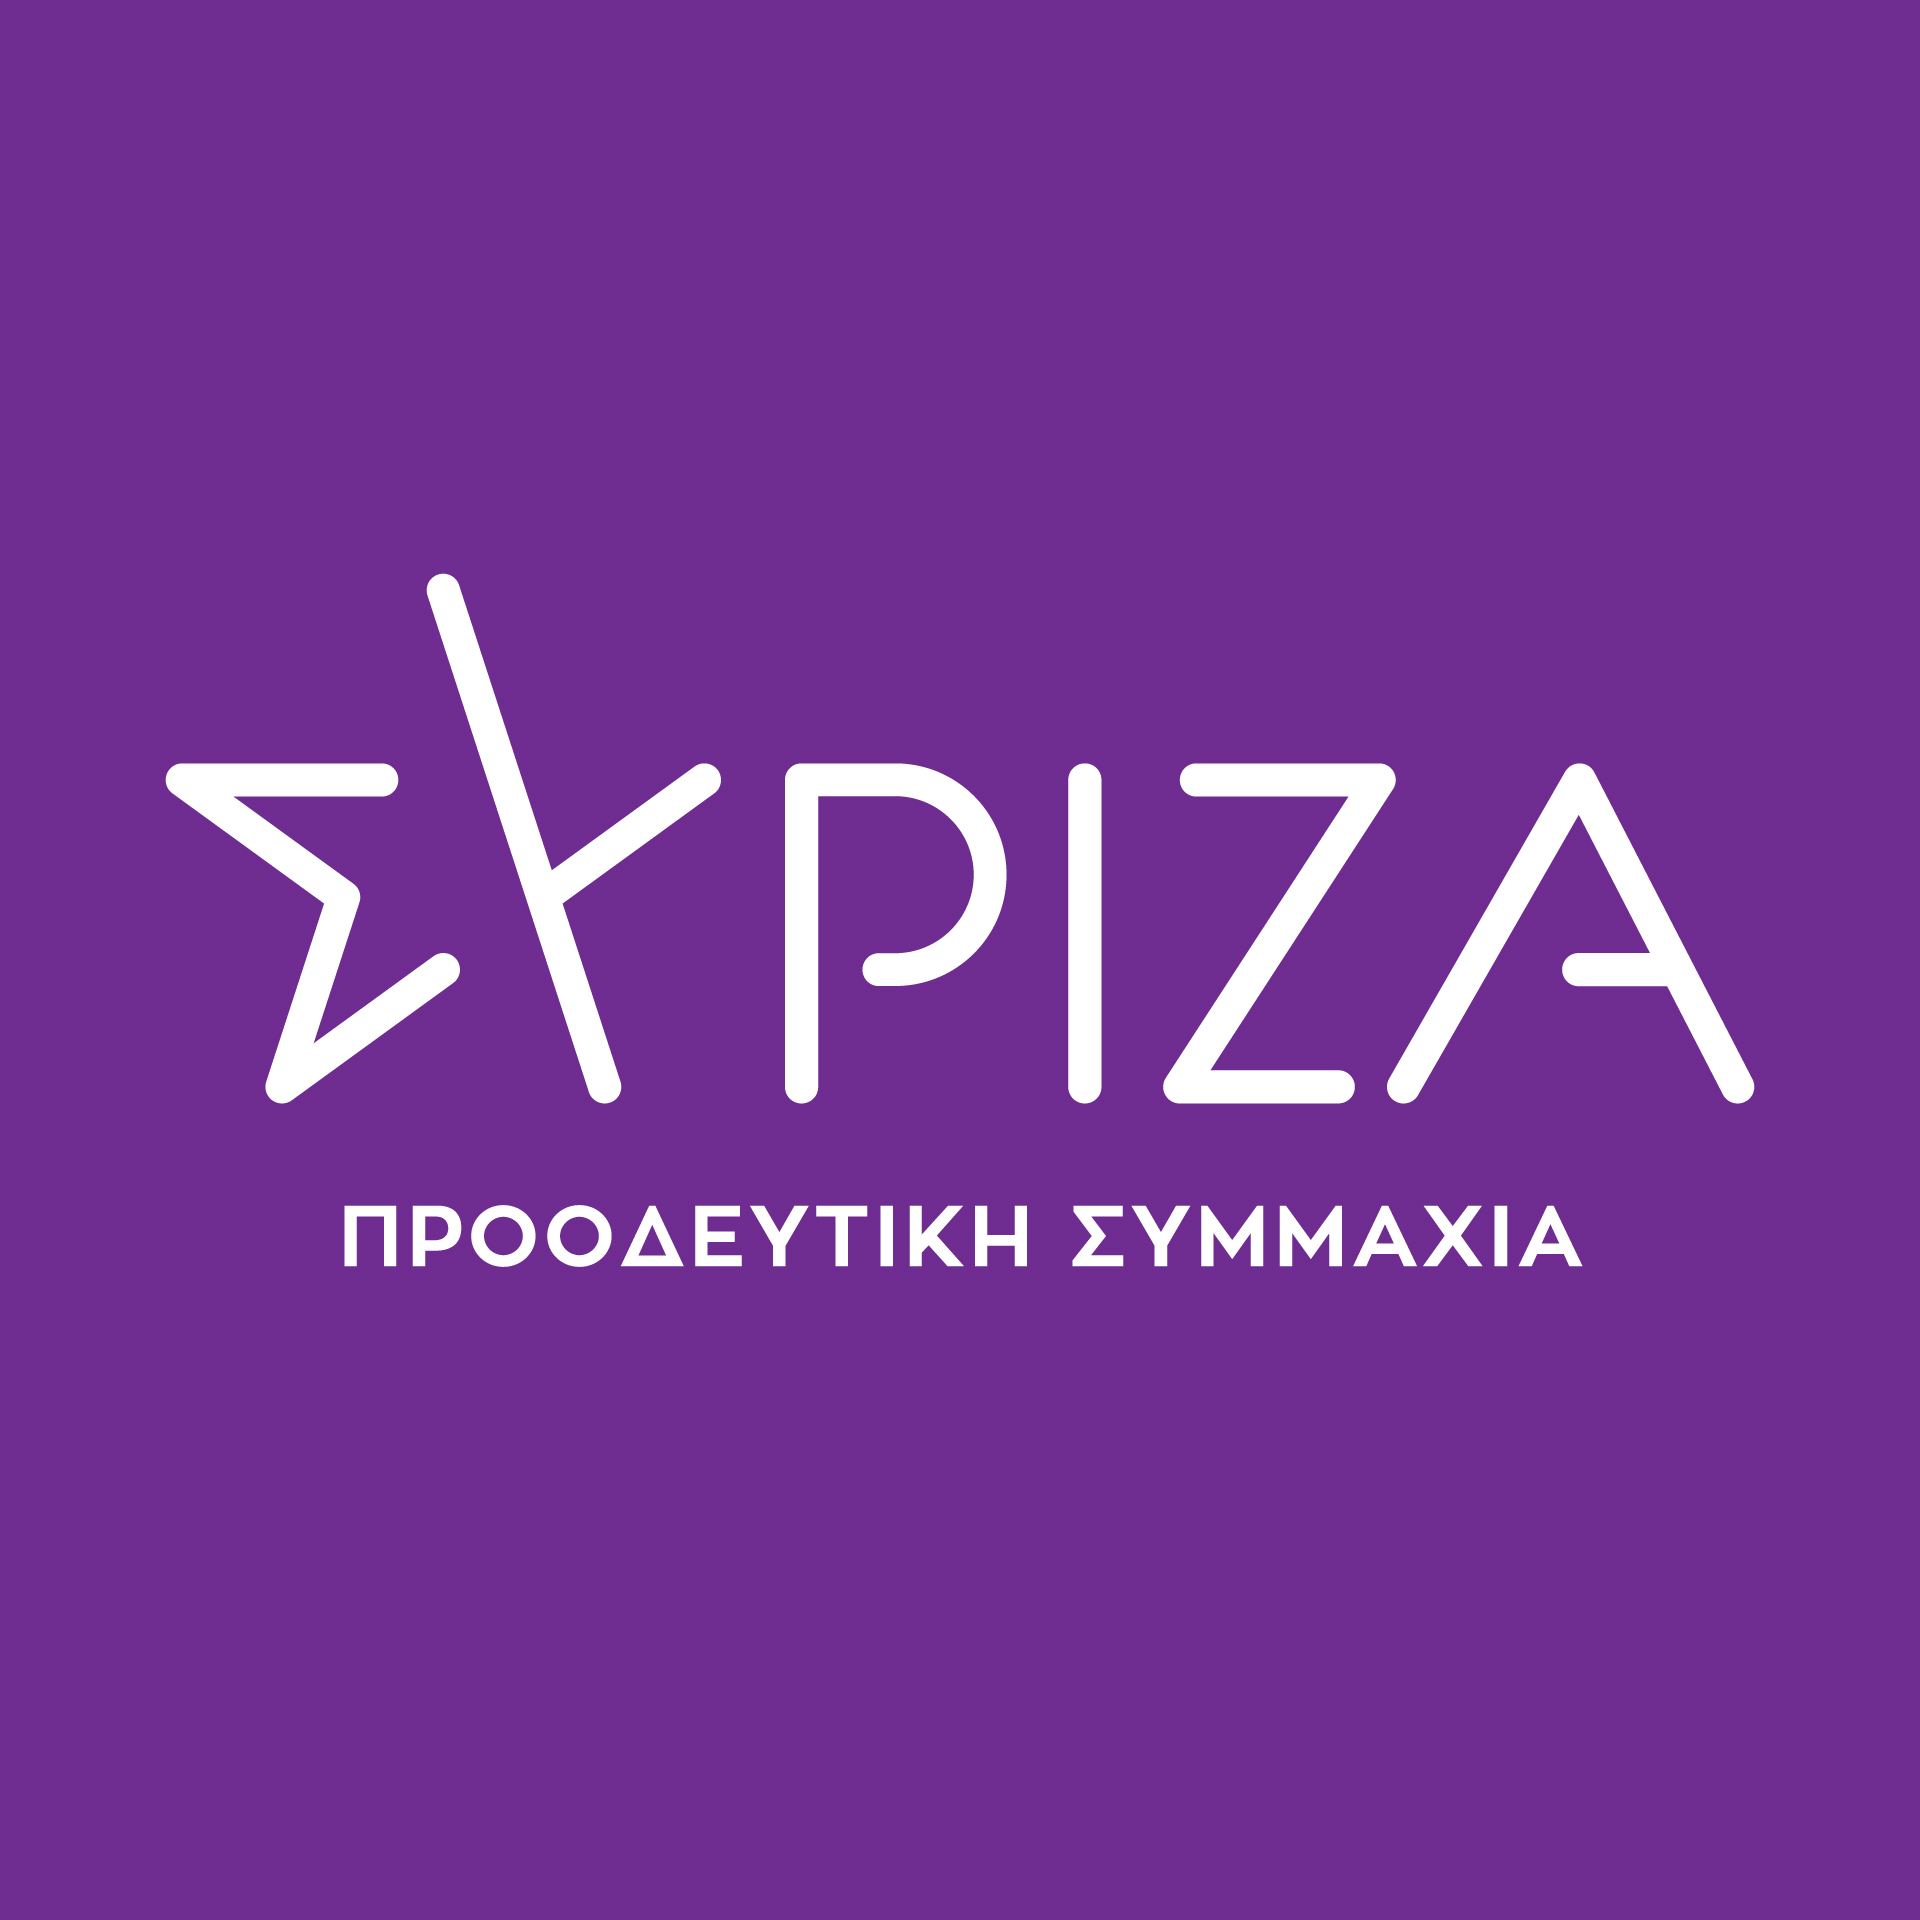 Ερώτηση βουλευτών ΣΥΡΙΖΑ - ΠΣ με θέμα την καθυστέρηση ανέγερσης του νέου κλειστού γυμναστηρίου στα Ιωάννινα